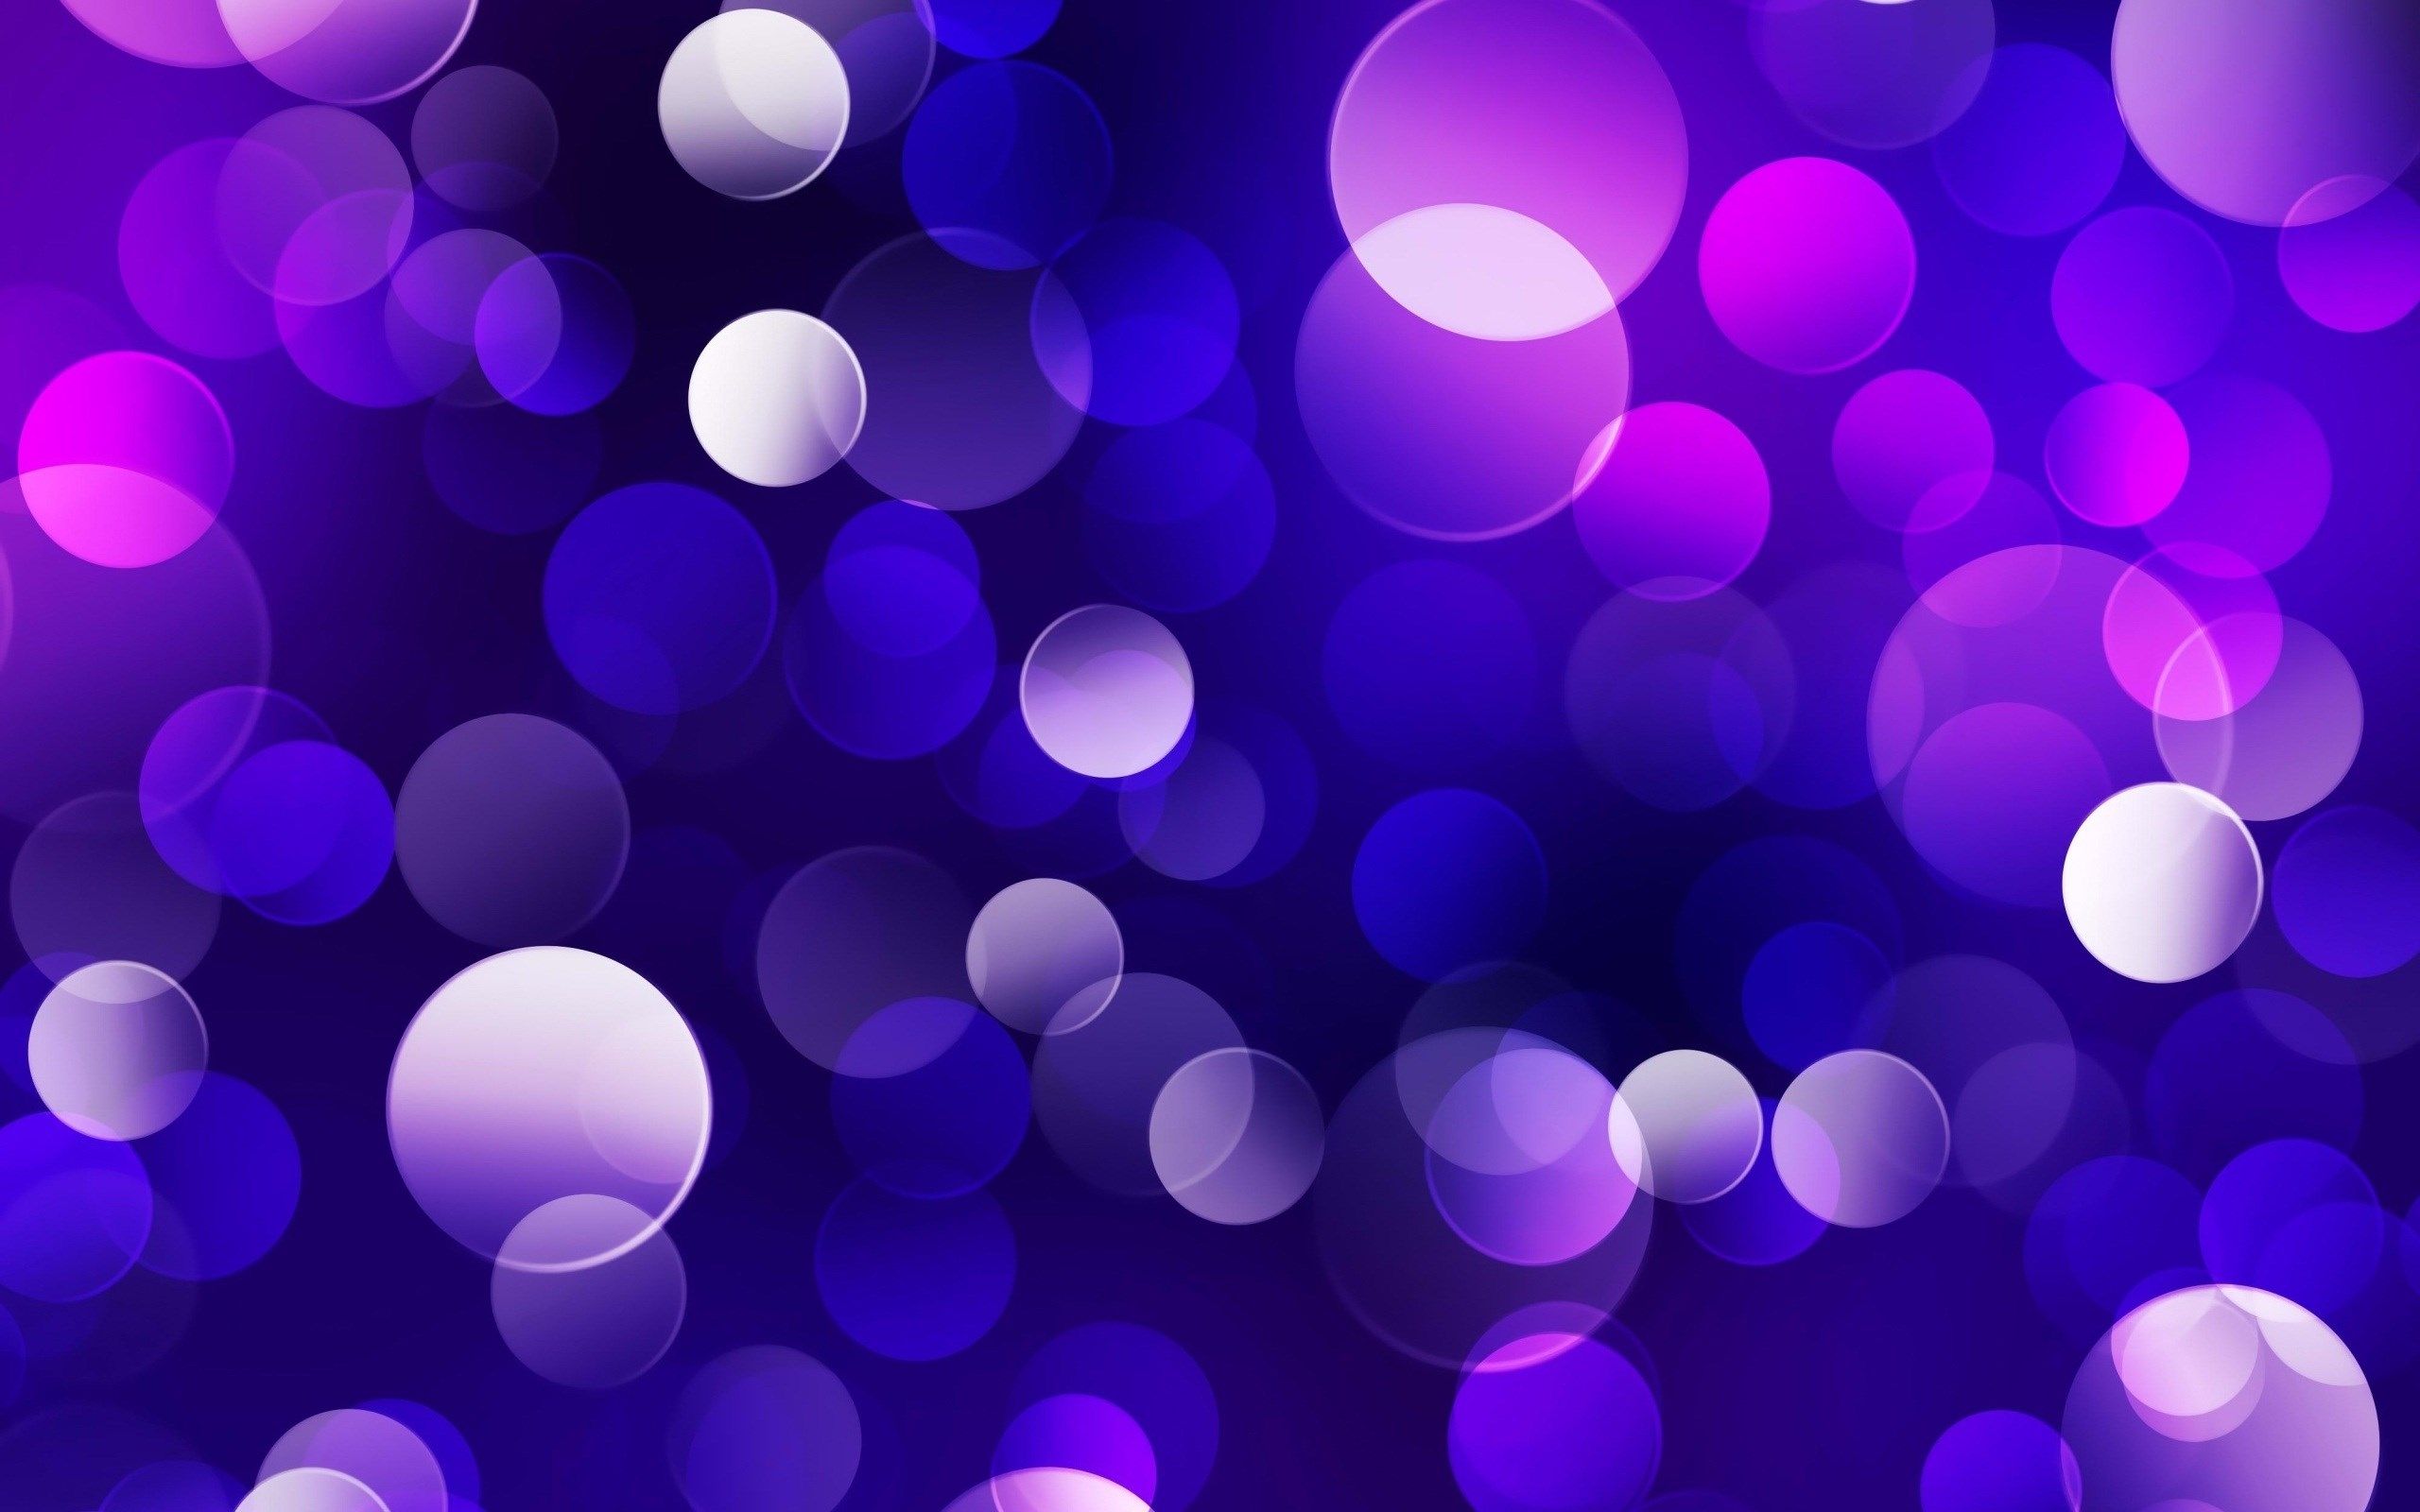 Hình nền bong bóng màu tím đầy sắc màu sẽ khiến bạn liên tưởng đến những buổi tiệc đêm lung linh. Hình ảnh sẽ đem lại cho bạn sự phấn khích và hoan hỉ, đồng thời giúp bạn thư giãn sau một ngày dài làm việc.